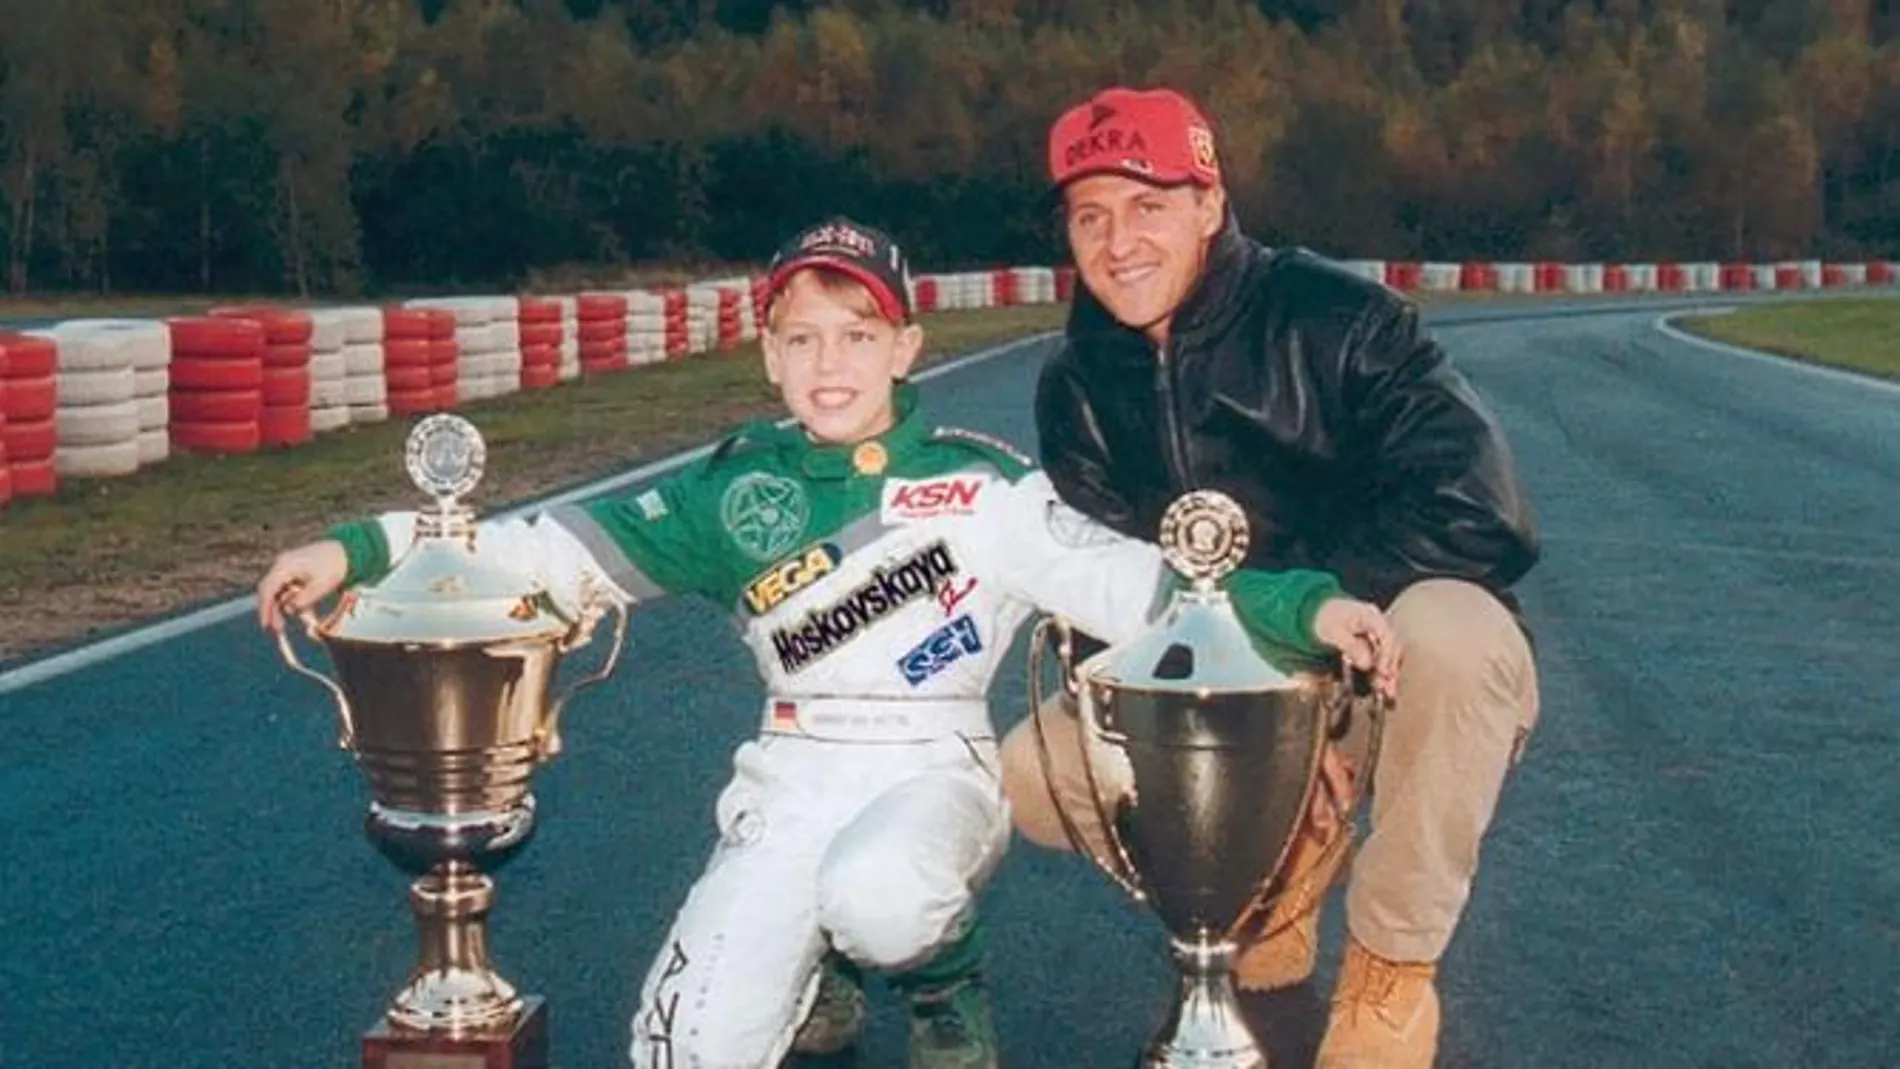 El heptacampeón conoció a Vettel en una entrega de premios en el año 2000